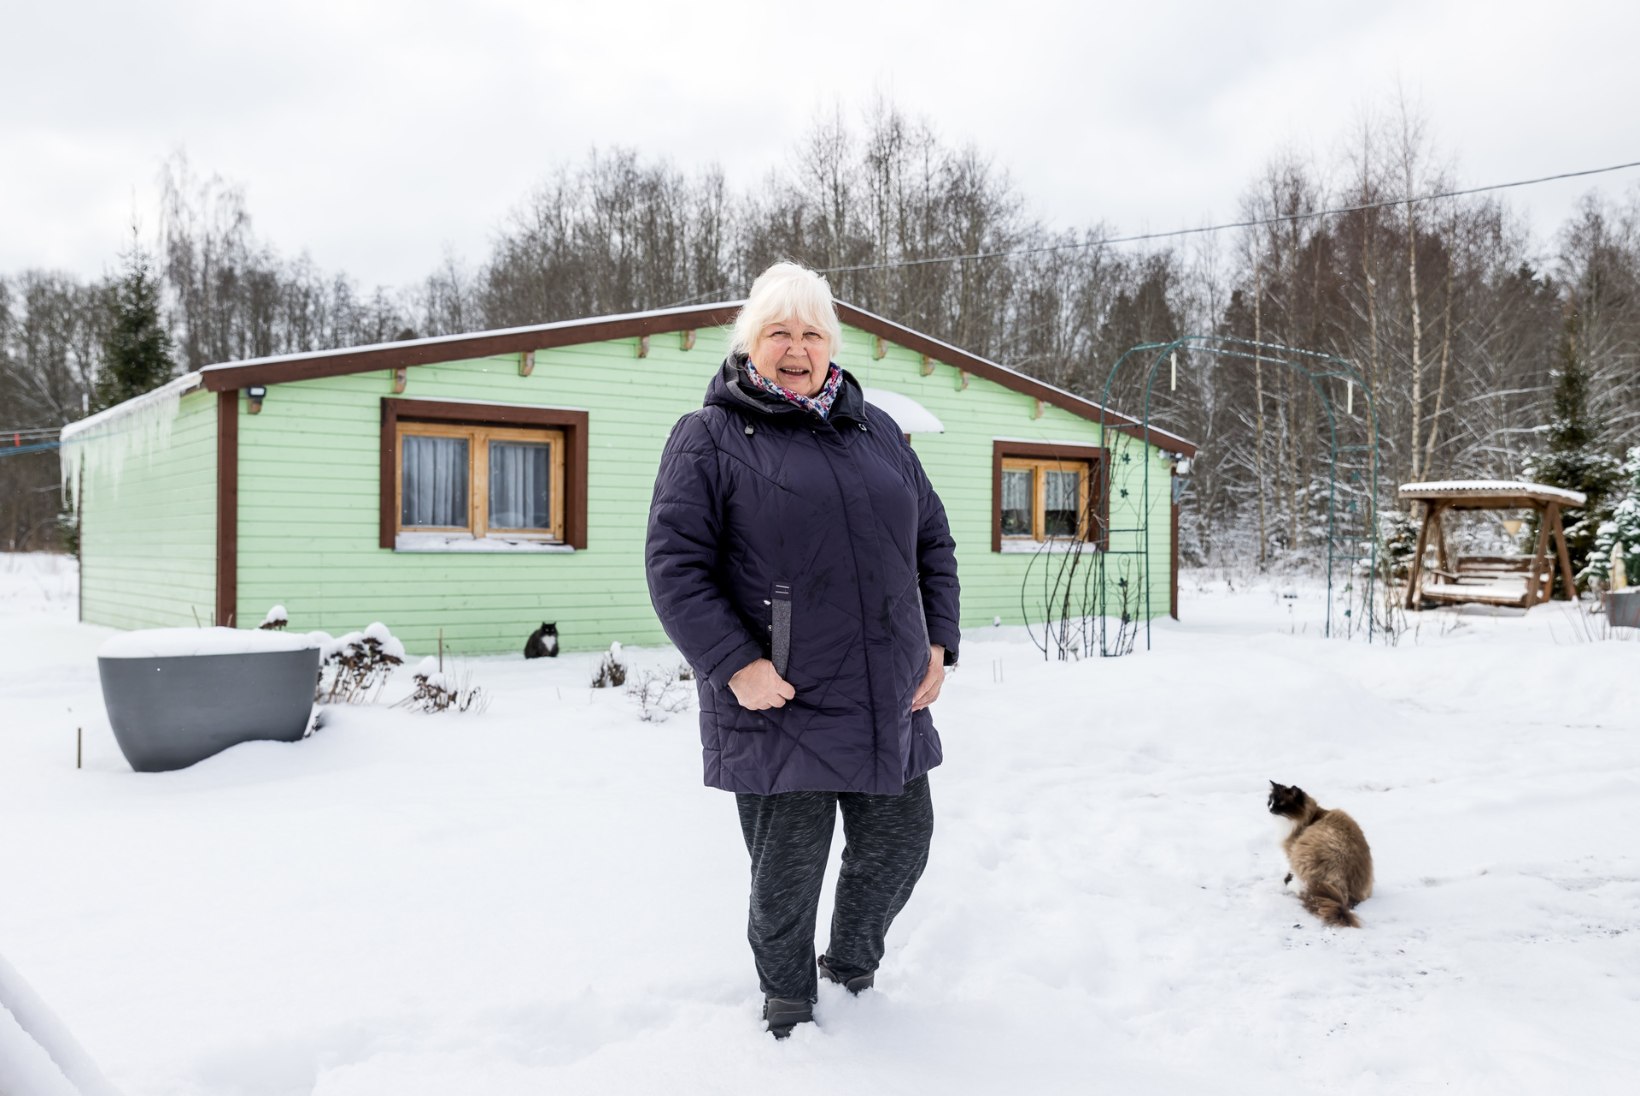 UUS ALGUS | Koogimeister Nadja ehitas pensionieaks endale maja